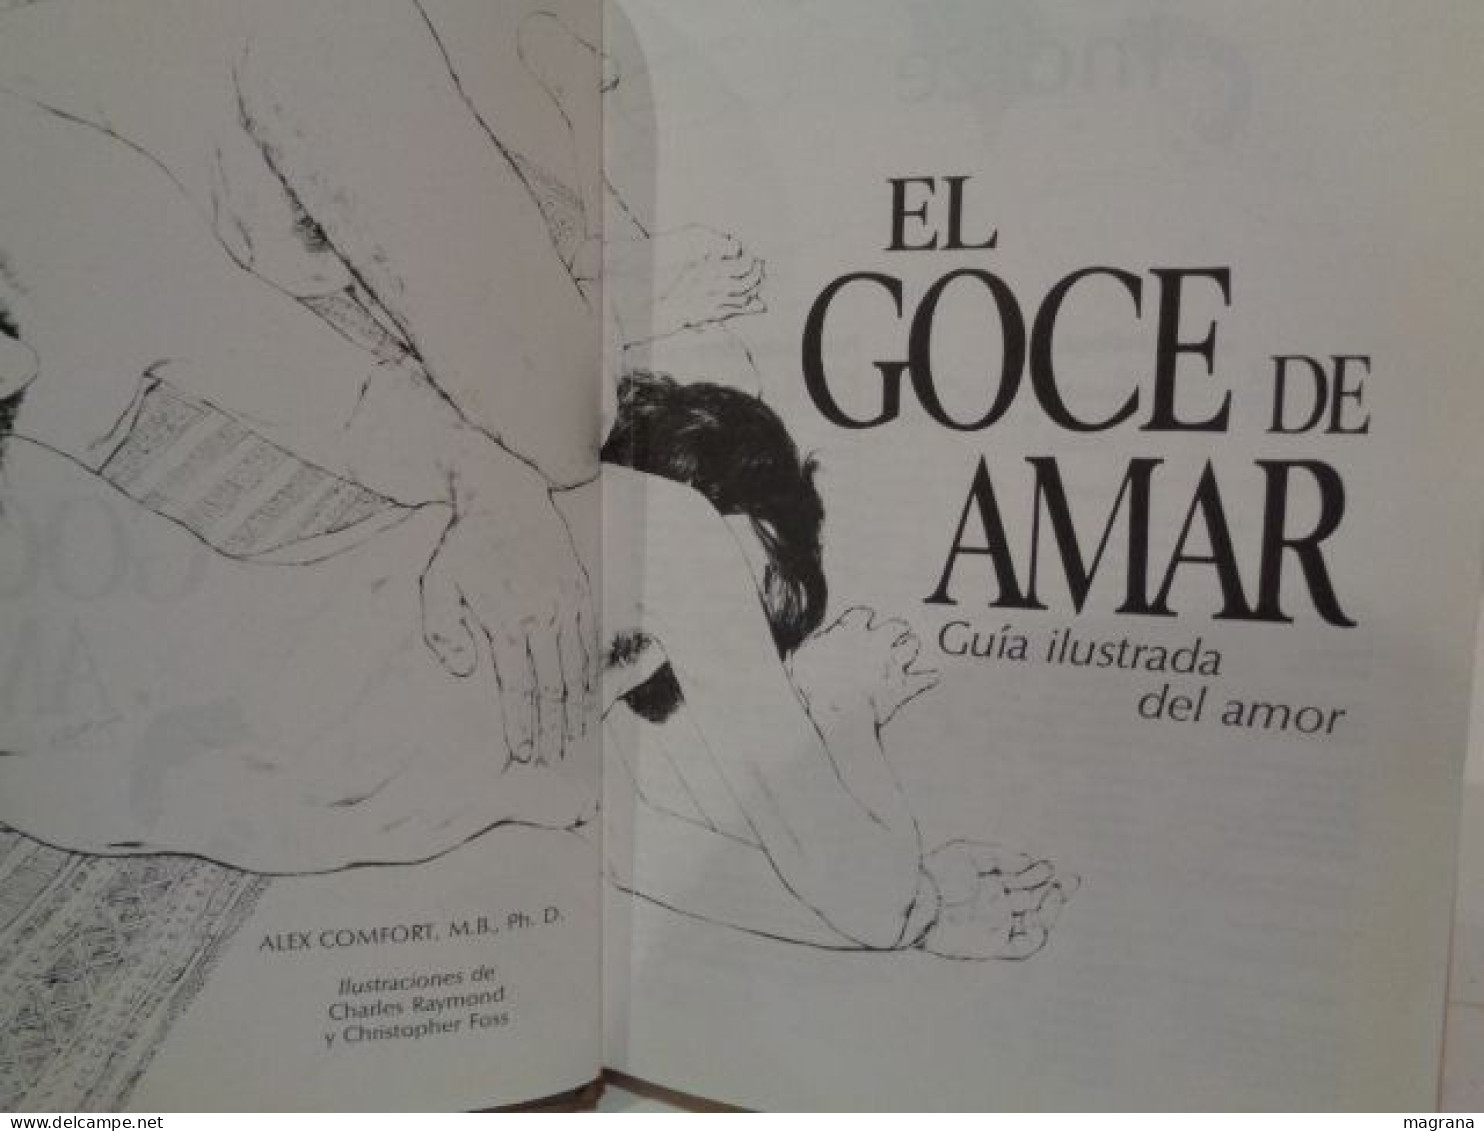 El Goce De Amar. The Joy Of Sex. Guía Ilustrada Del Amor. Dr. Alex Comfort. Editorial Circulo De Lectores. 1991. 256 Pp. - Culture